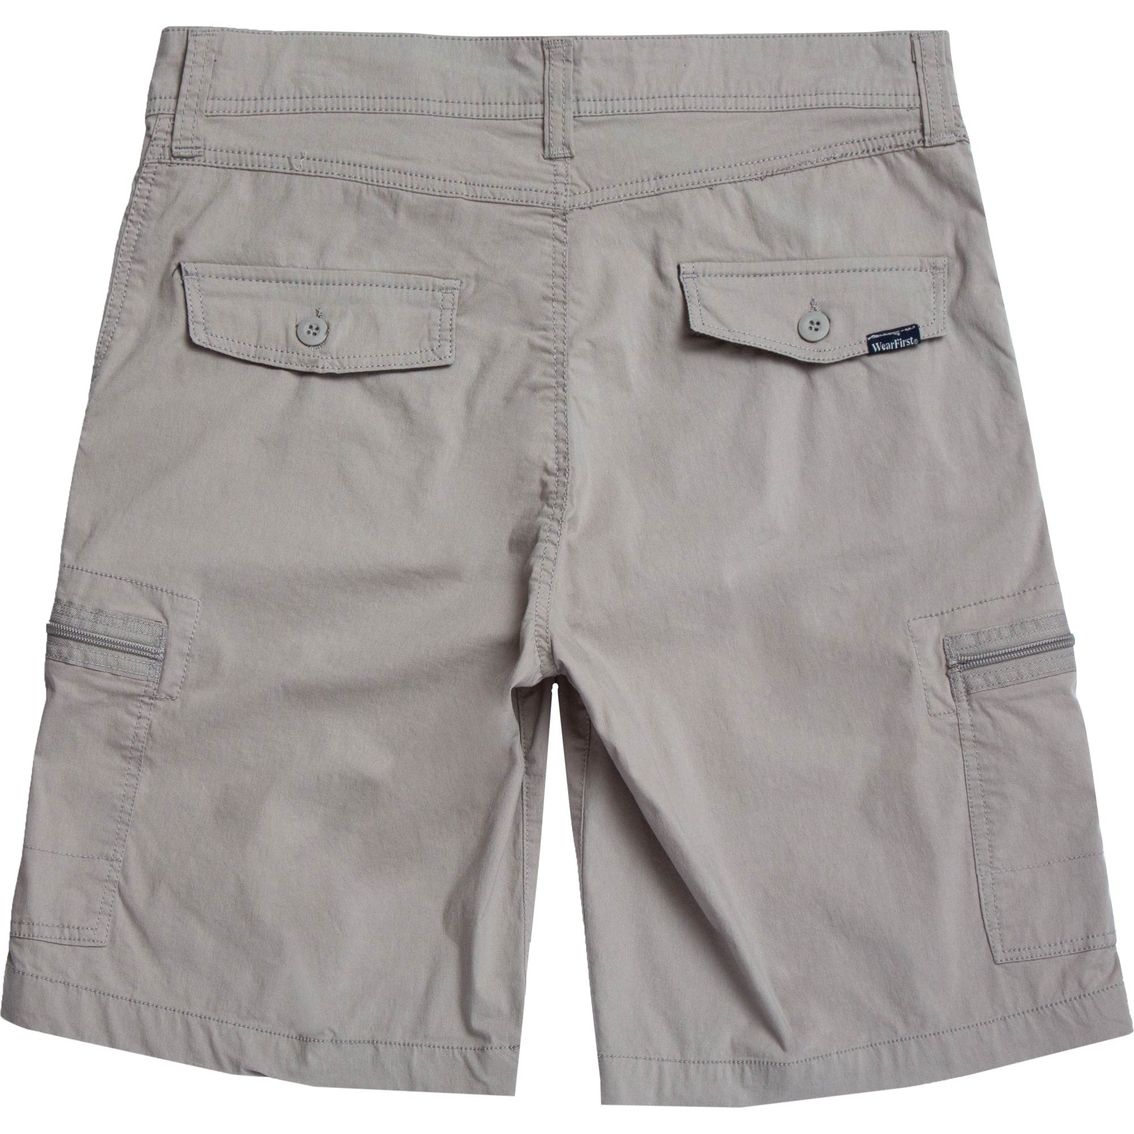 Wearfirst Freeband Stretch Cargo Shorts | Shorts | Clothing ...